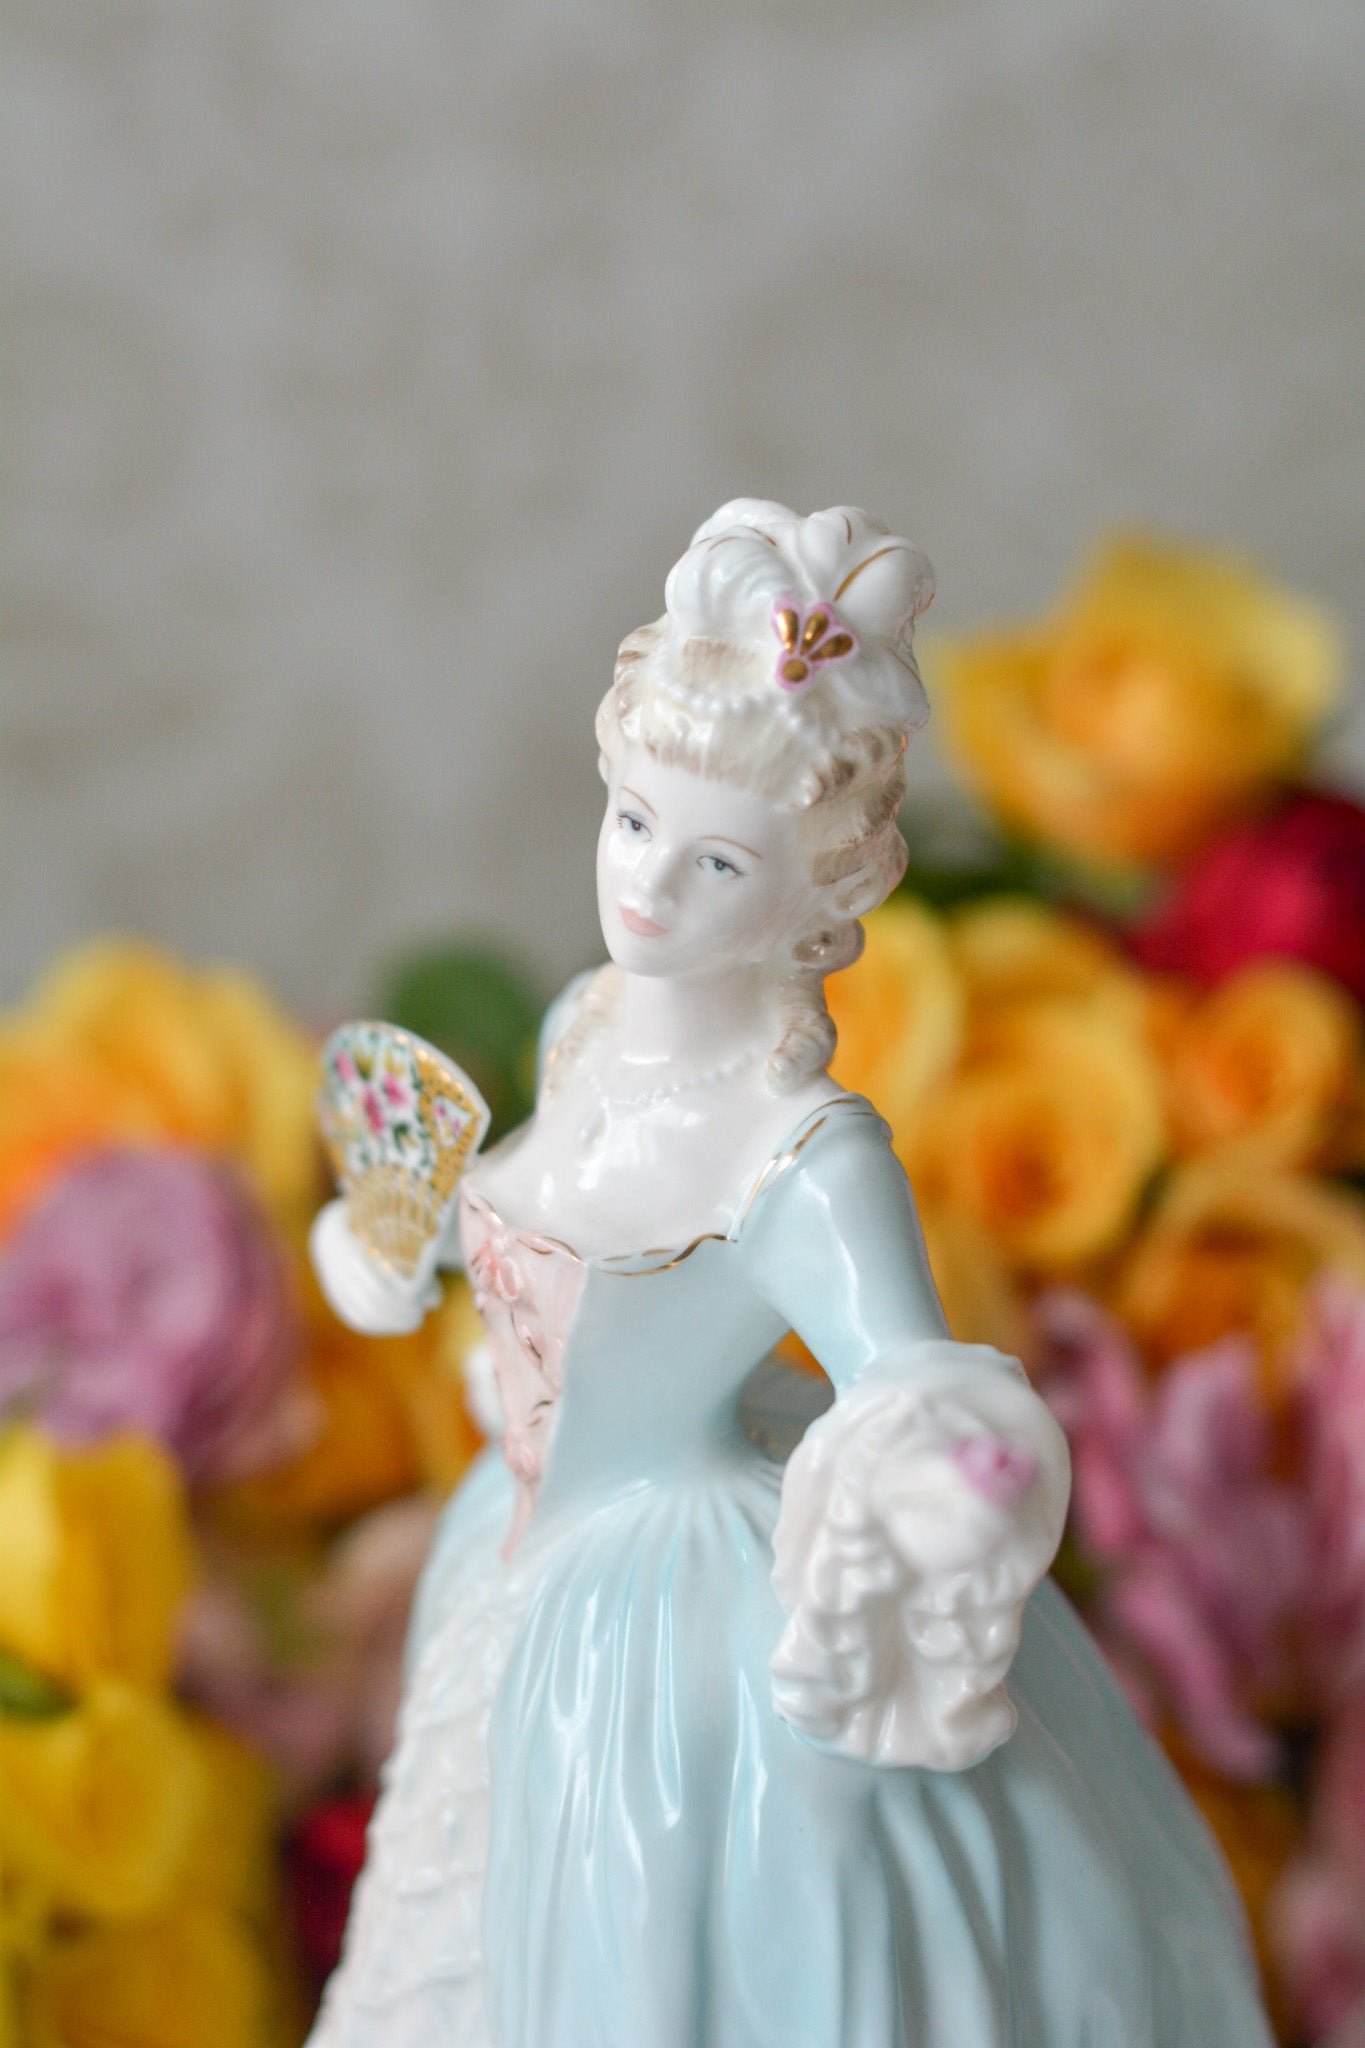 コールポートのマリーアントワネットのフィギュリンです。フィギュリンとは陶器の人形で、ポーセリンドールとも言います。とても優雅なフィギュリンで人気のあるお品です。